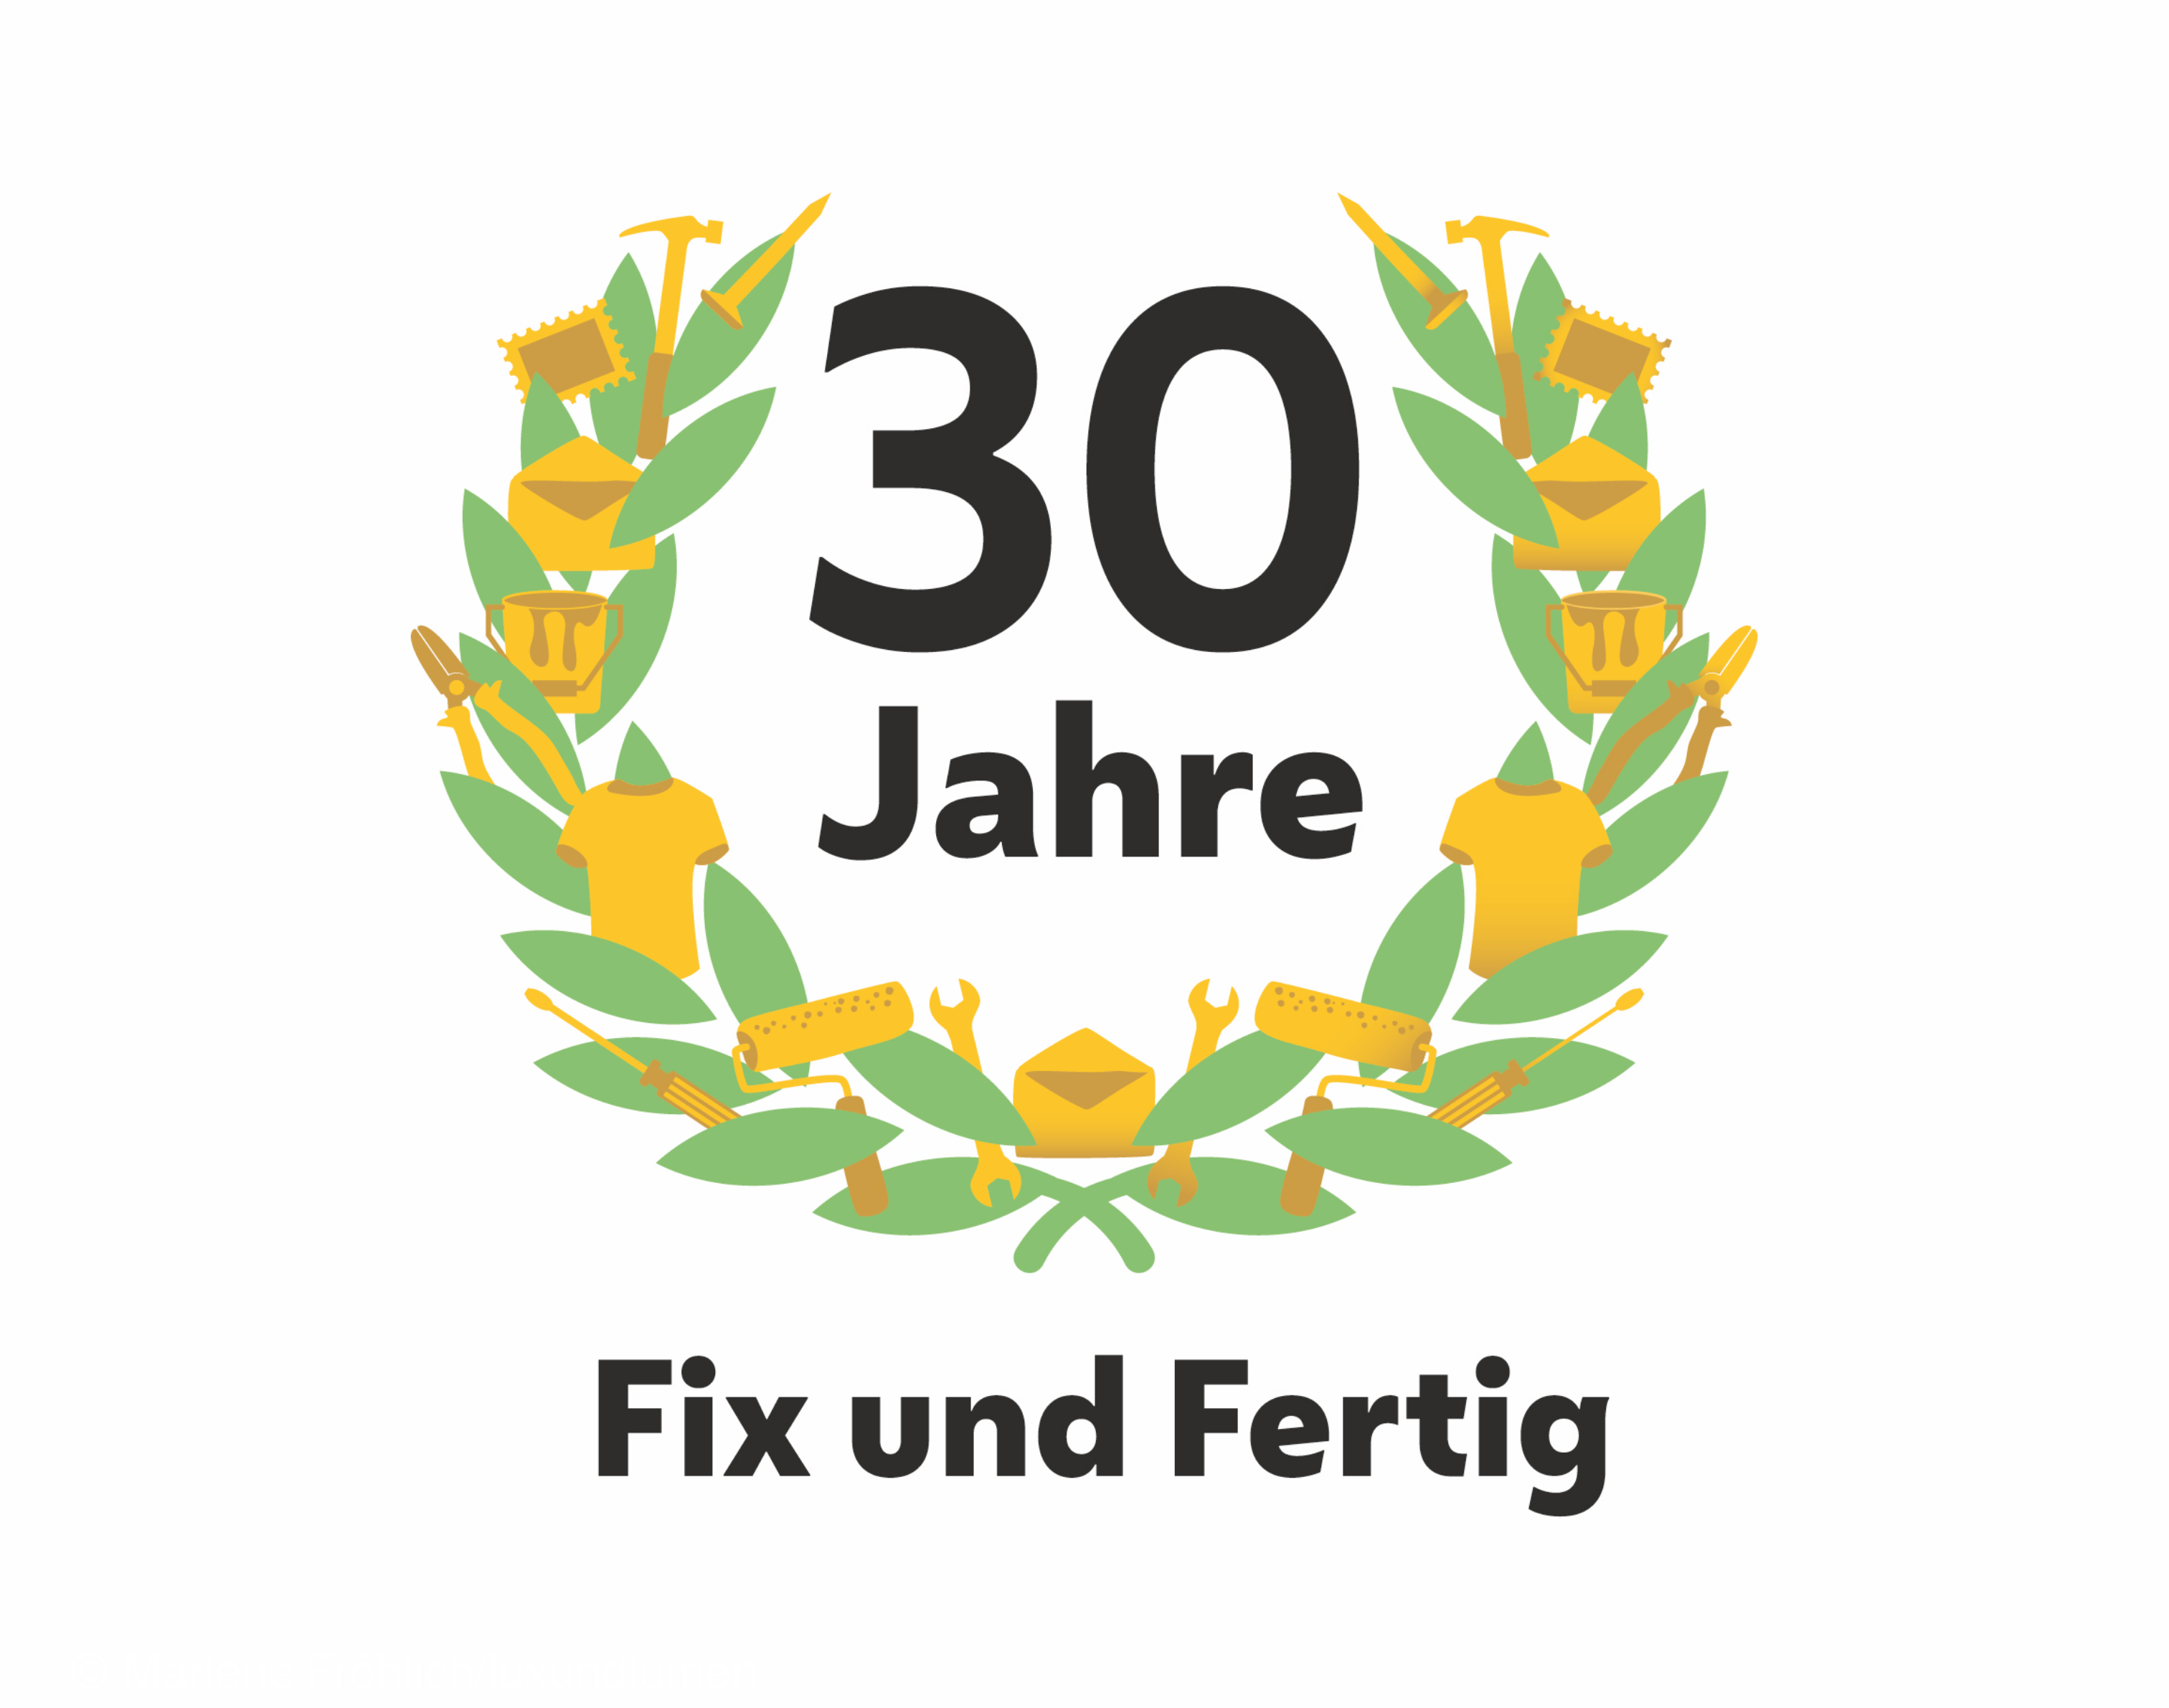 Logo zum Jubiläum "30 Jahre Fix und Fertig", dazu ein Kranz aus Lorbeerblättern, Werkstücken und Erzeugnissen von Fix und Fertig.